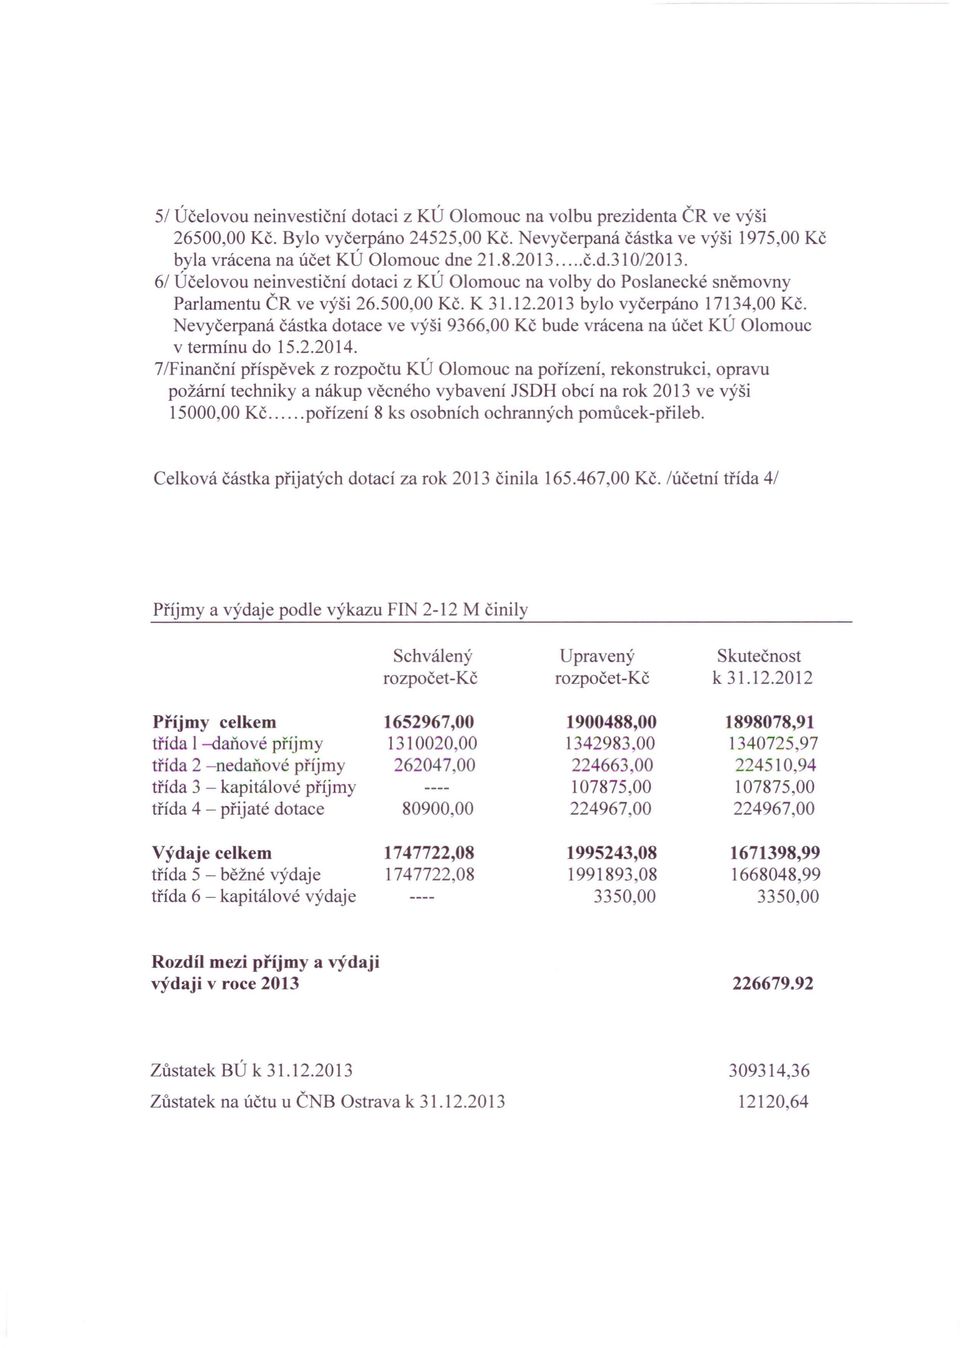 Nevyčerpaná částka dotace ve výši 9366,00 Kč bude vrácena na účet KÚ Olomouc v termínu do 15.2.2014.